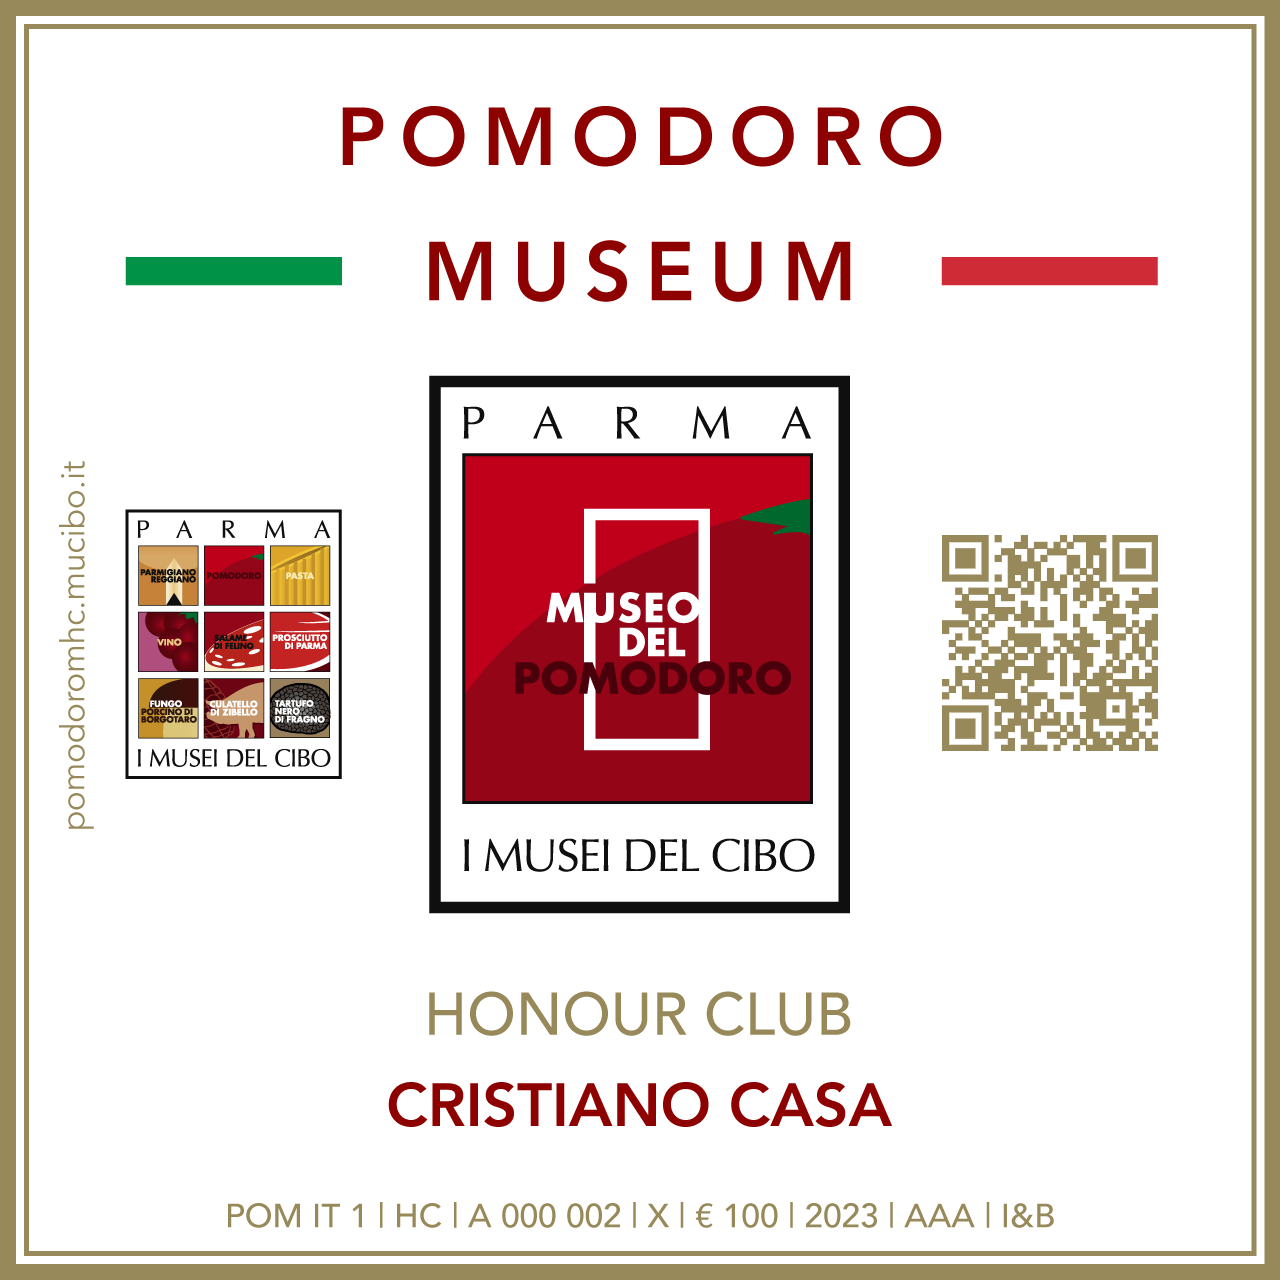 Pomodoro Museum Honour Club - Token Id A 000 002 - CRISTIANO CASA